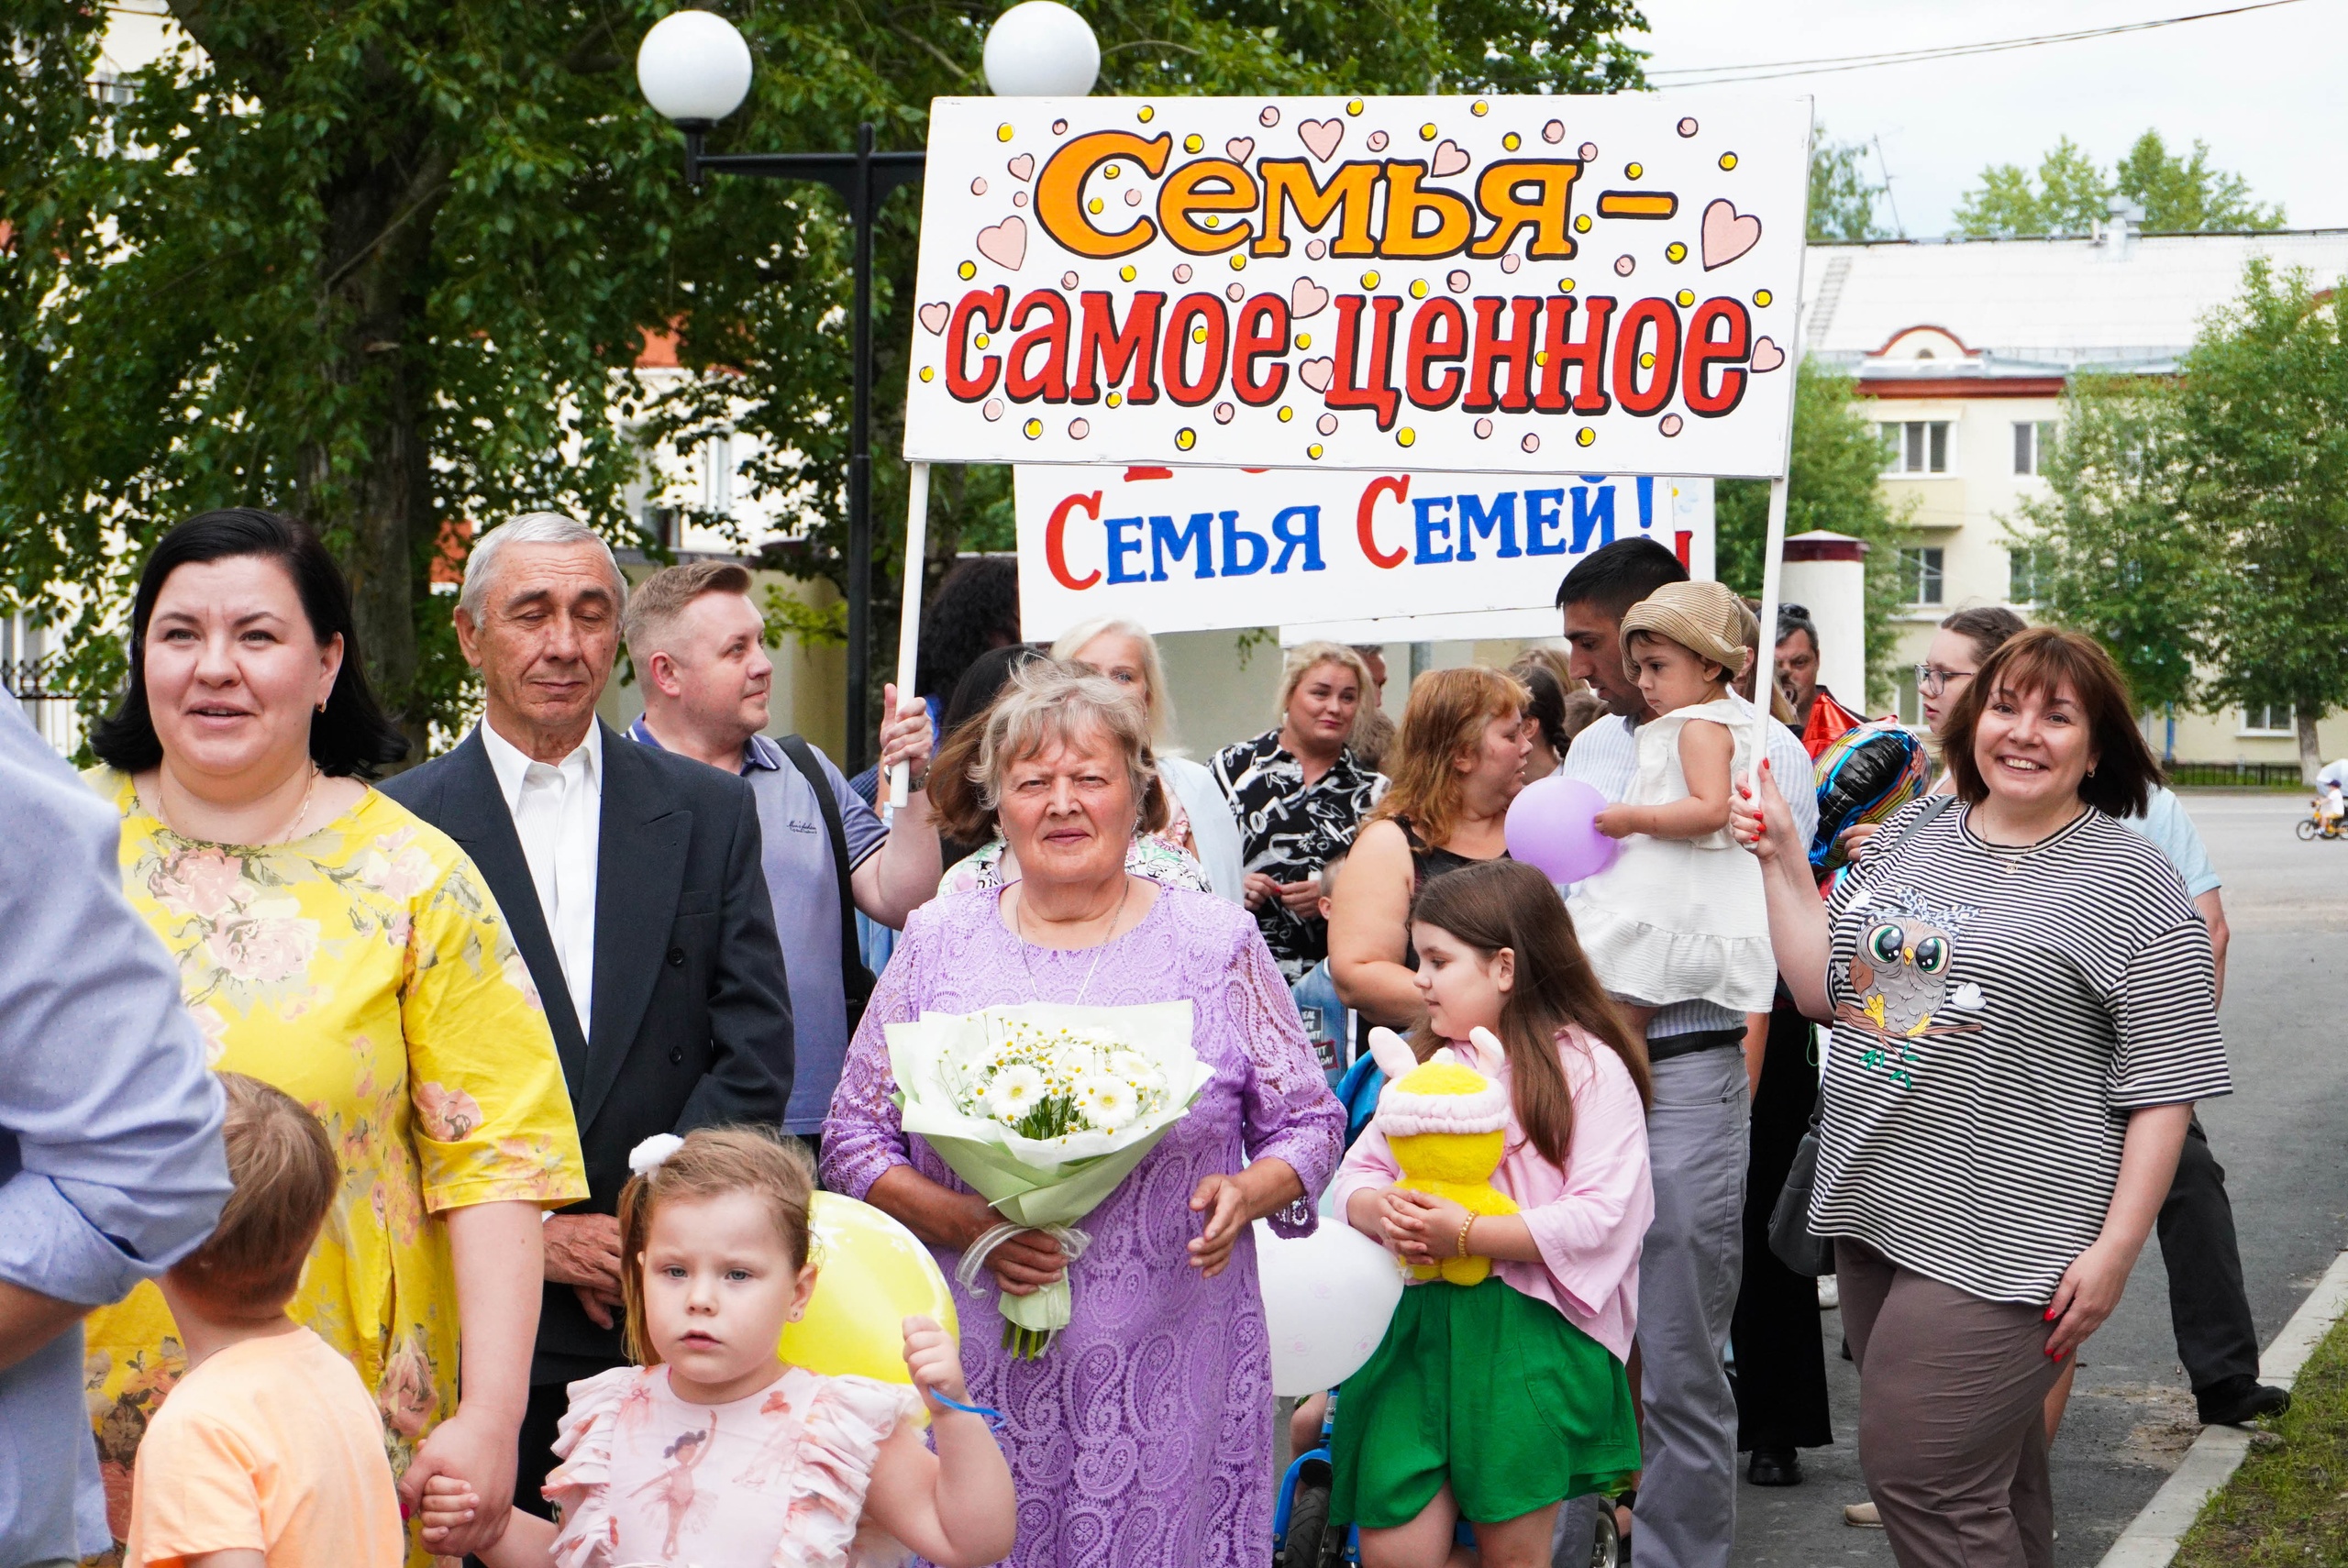 Вчера в детском парке состоялся праздничный концерт «Ромашковое счастье», посвящённый Дню семьи, любви и верности!